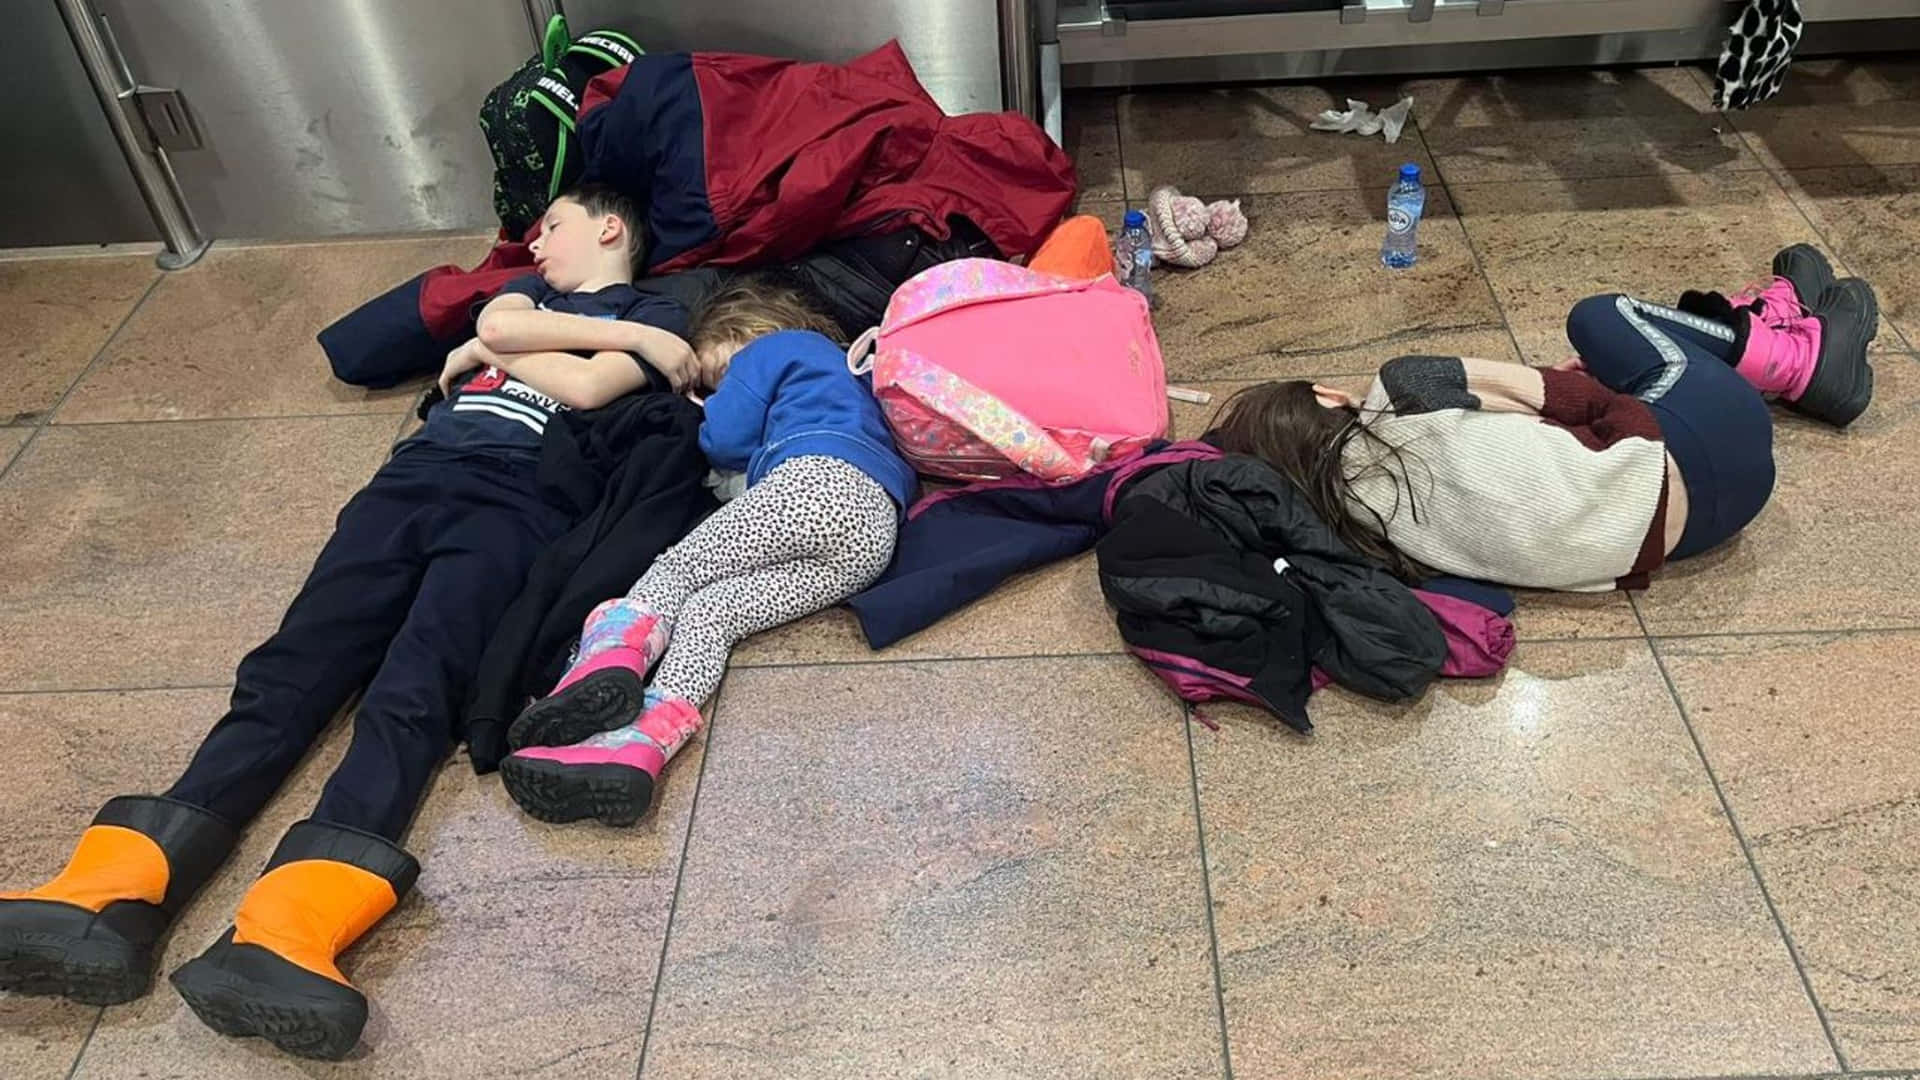 Ungruppo Di Bambini Sta Dormendo Sul Pavimento Di Un Aeroporto